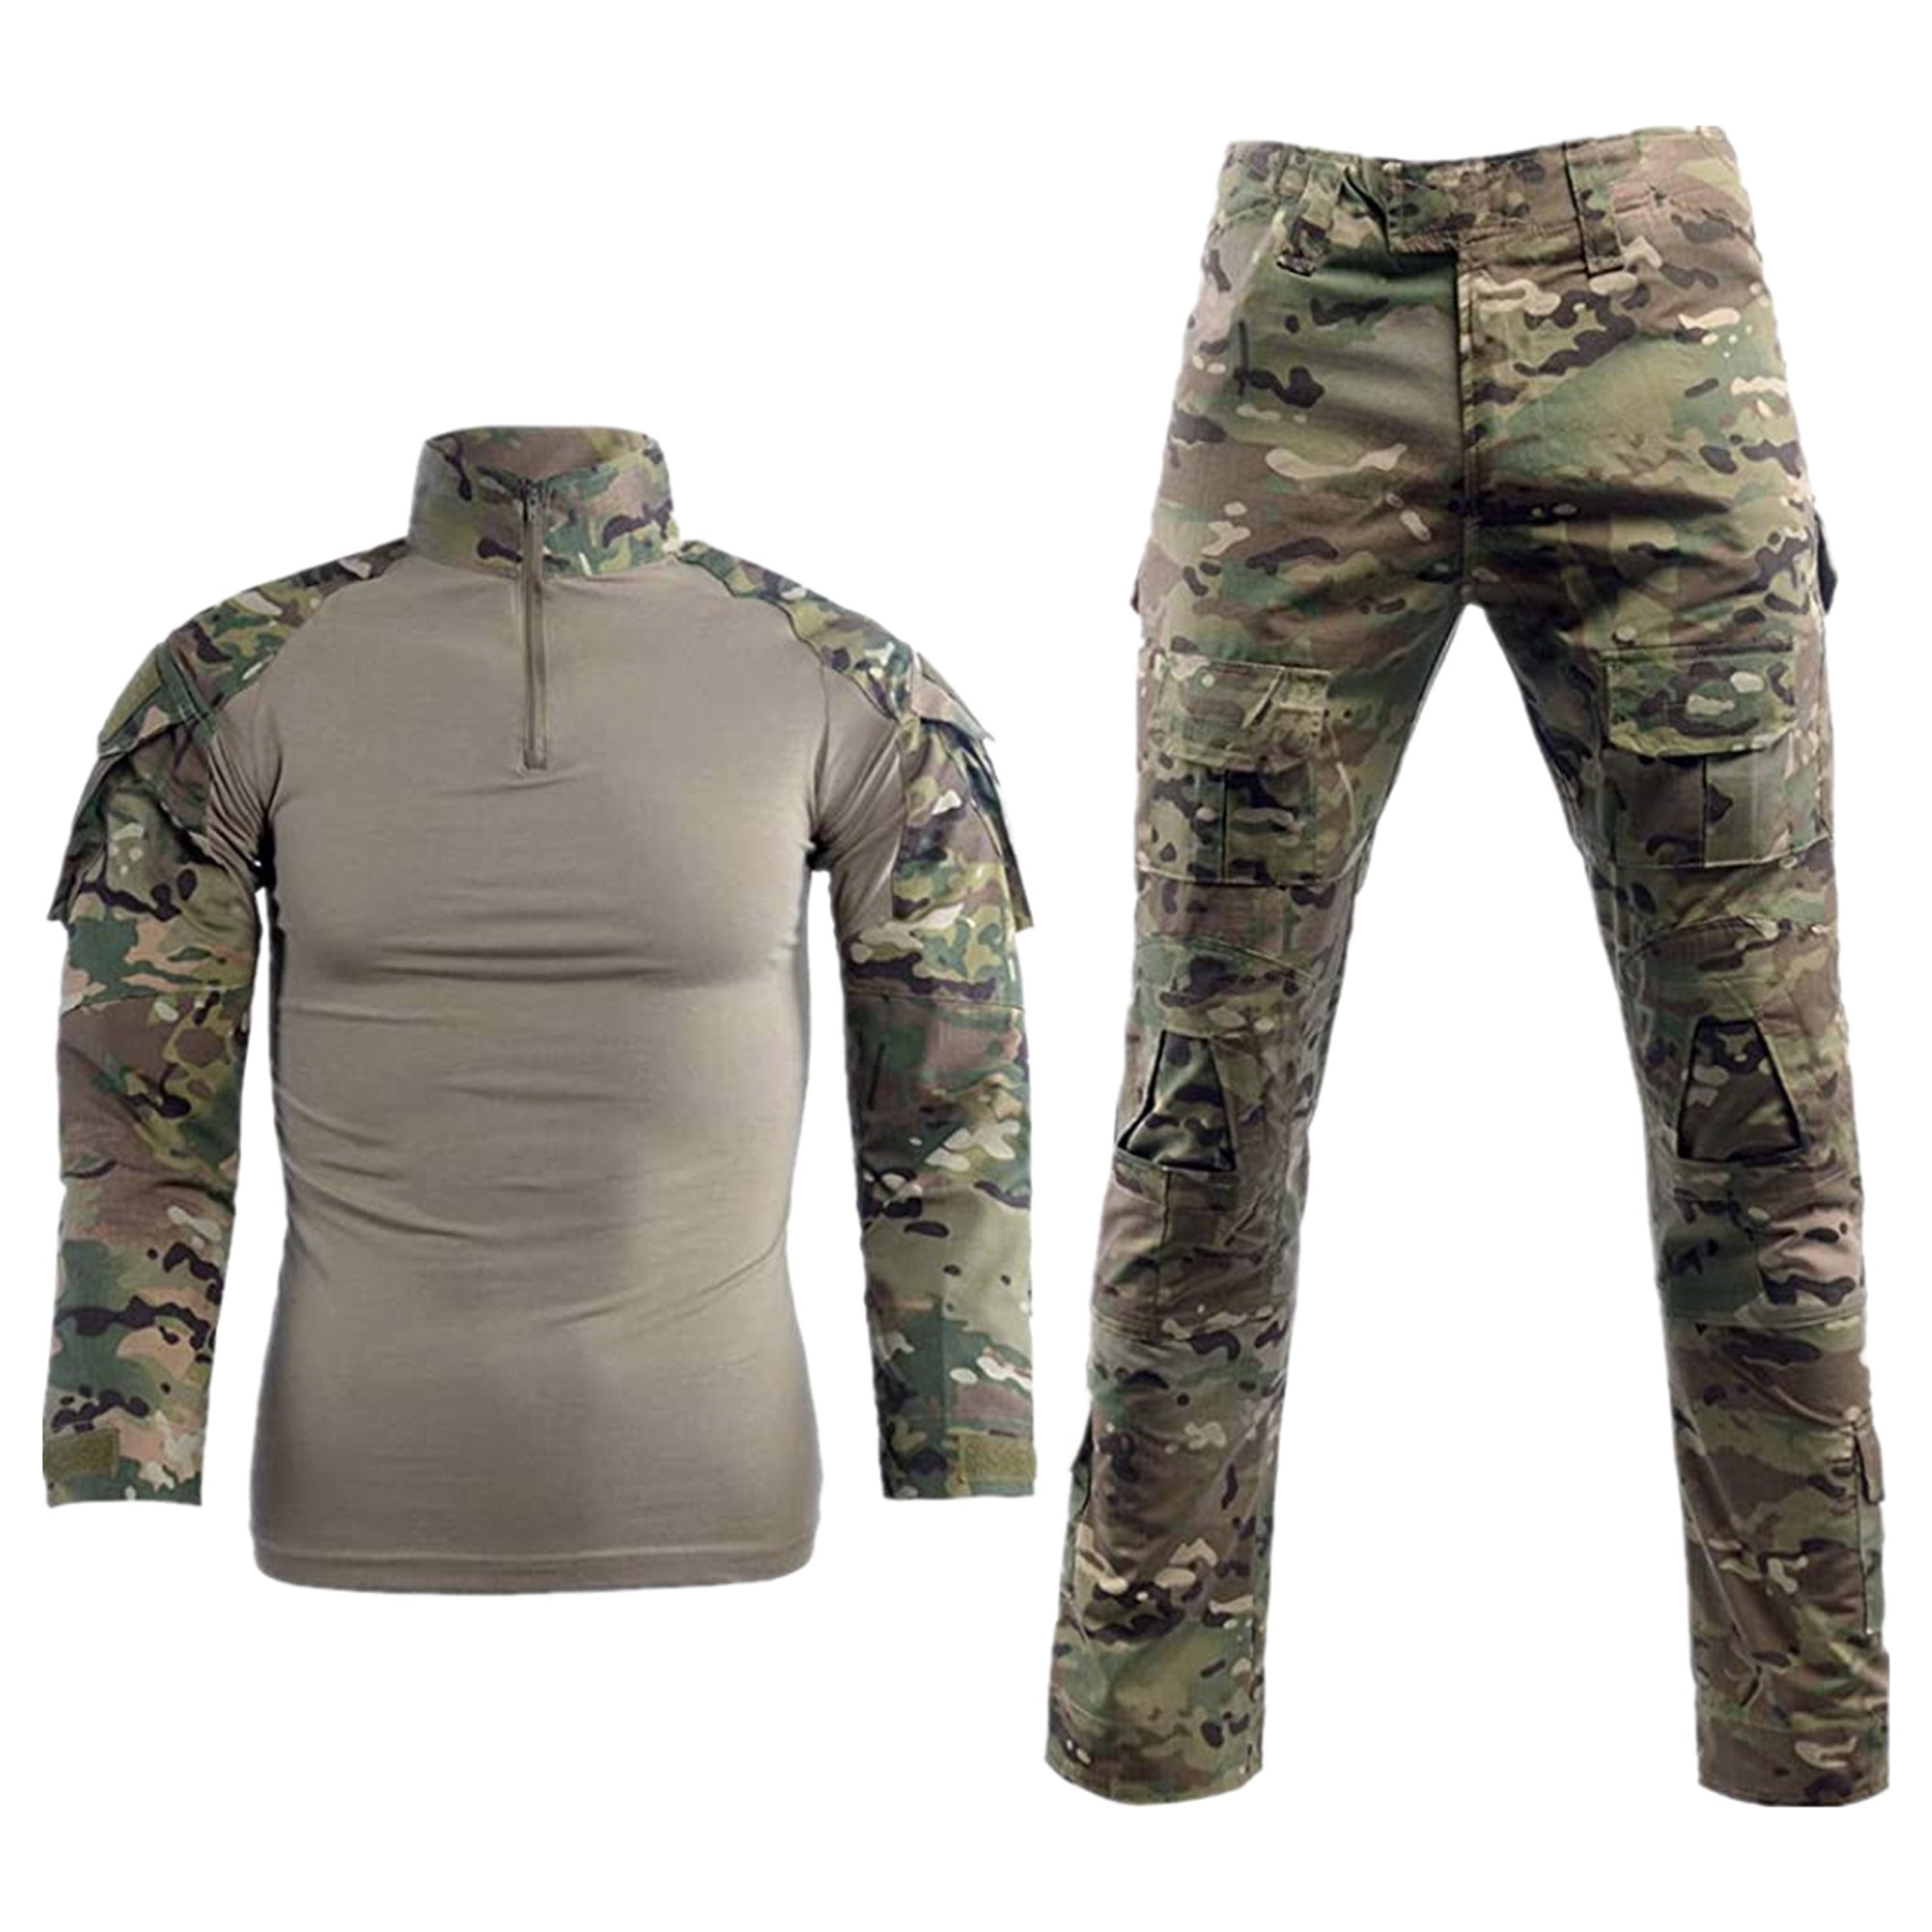 Mens Tactical Combat Shirt Pants Suit BDU Uniform Military Army SWAT Camouflage 